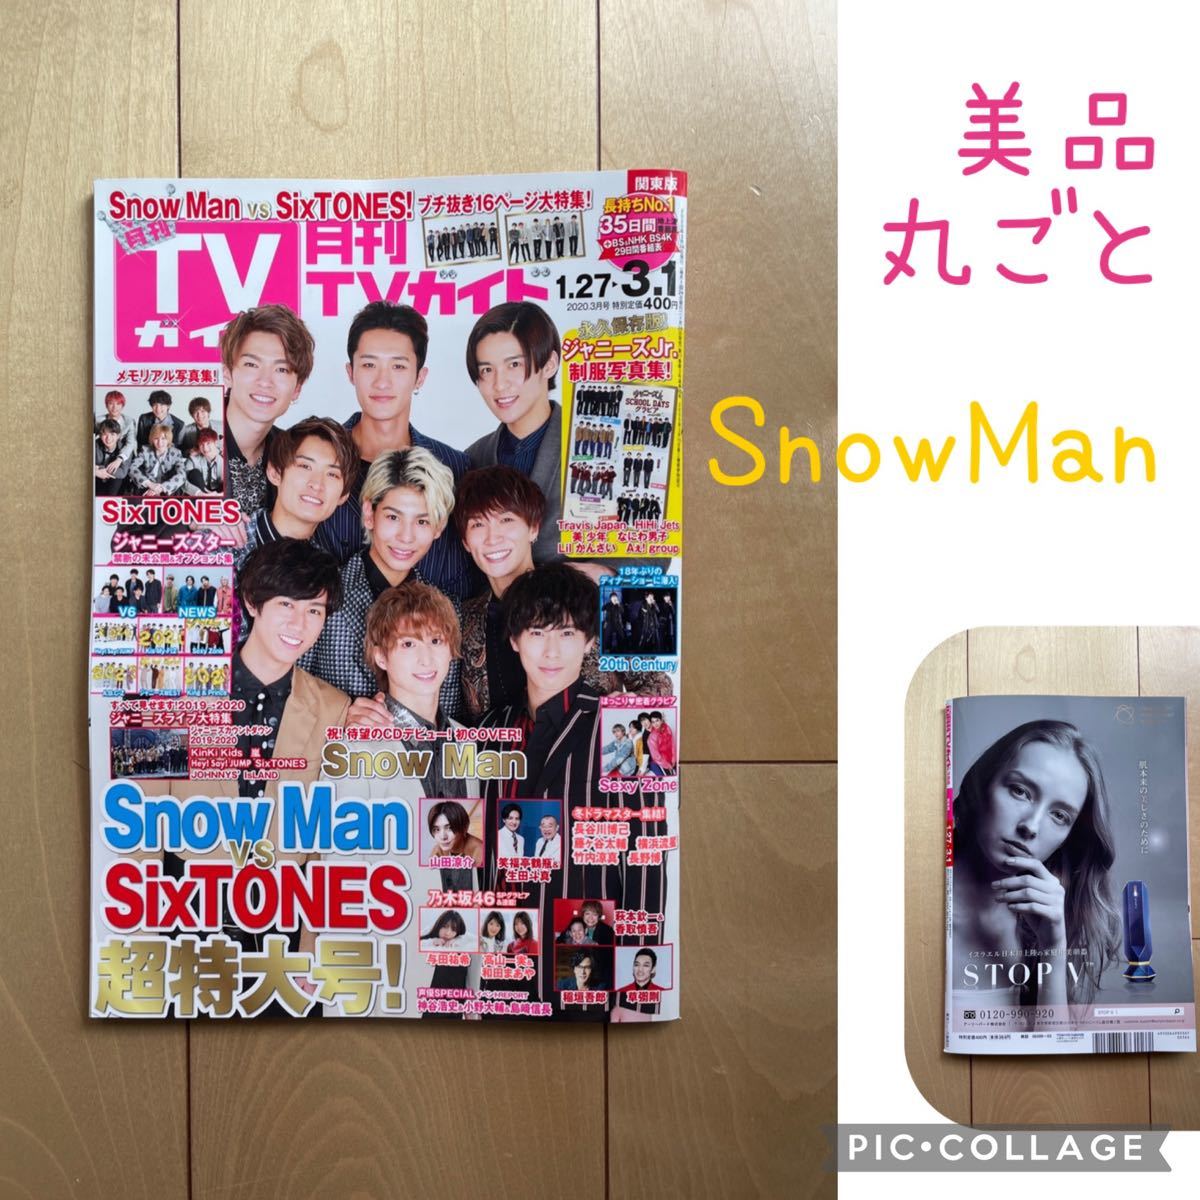 テレビガイド TVガイド関東版 2020年 03月号 SnowMan